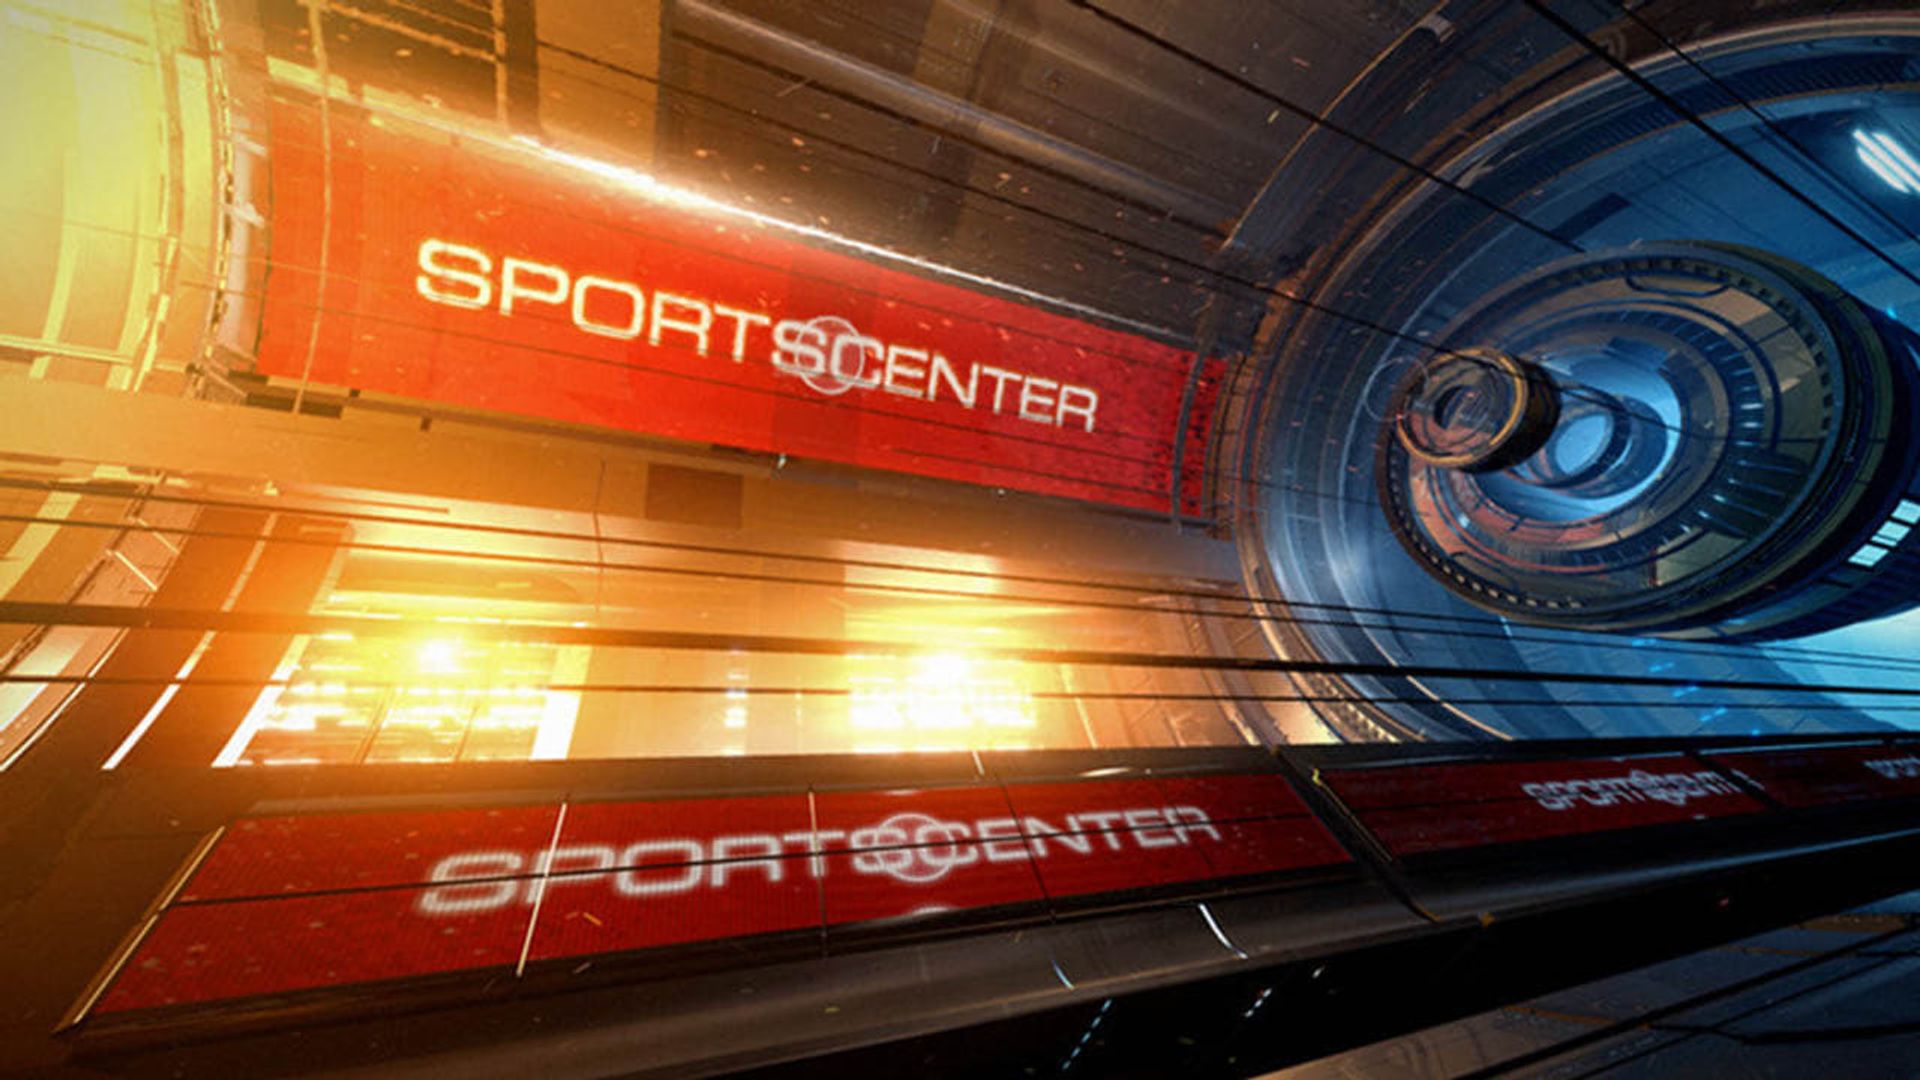 SportsCenter background